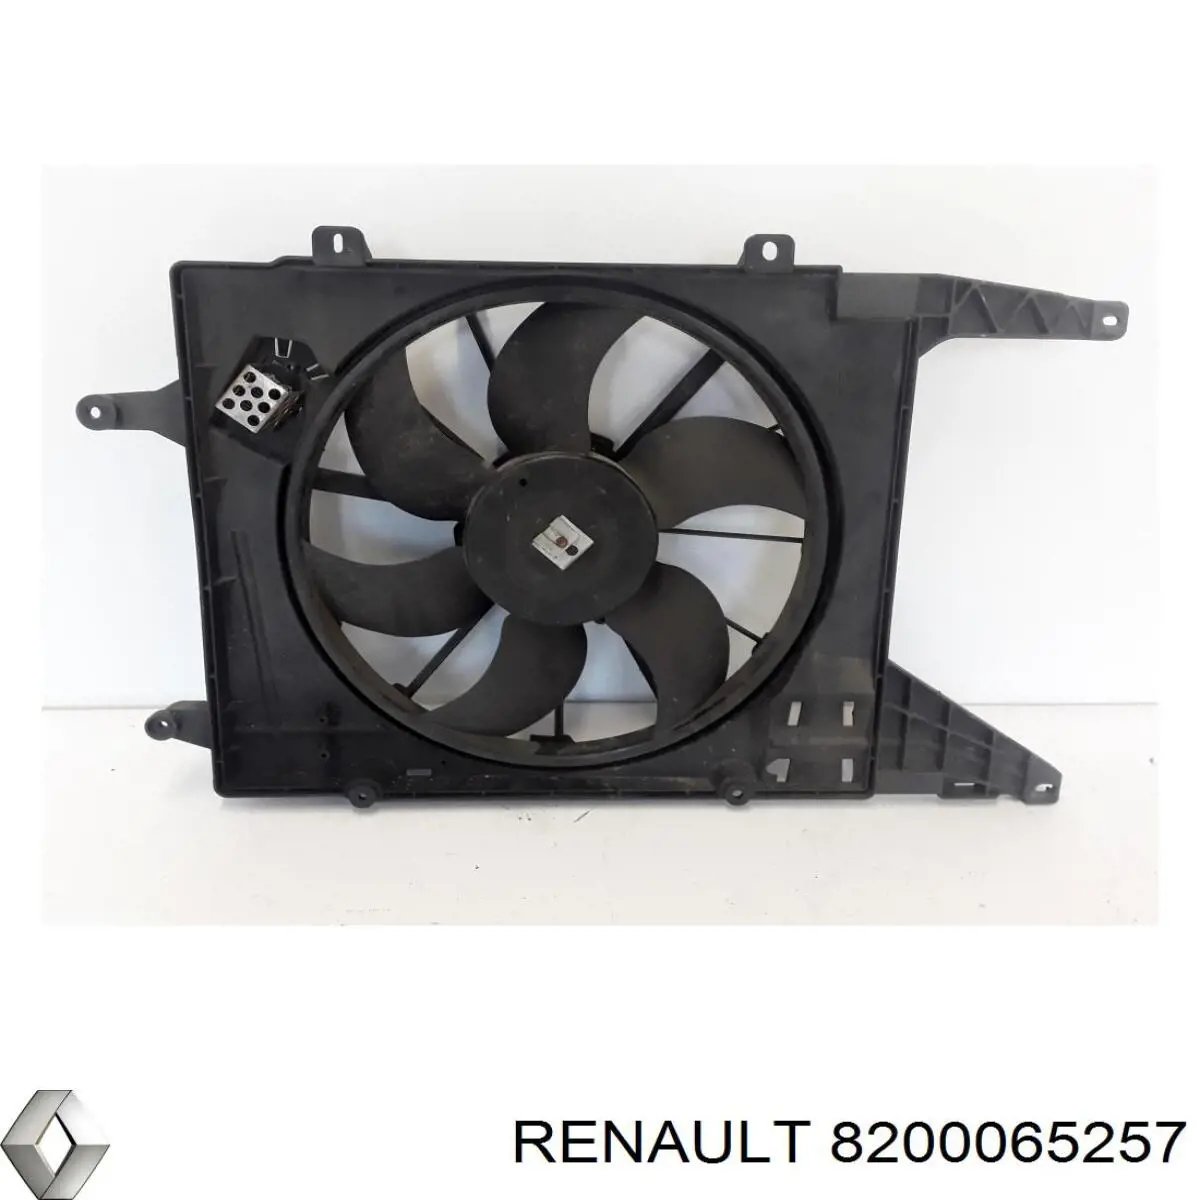 Difusor de radiador, ventilador de refrigeración, condensador del aire acondicionado, completo con motor y rodete para Renault Megane (DA0)